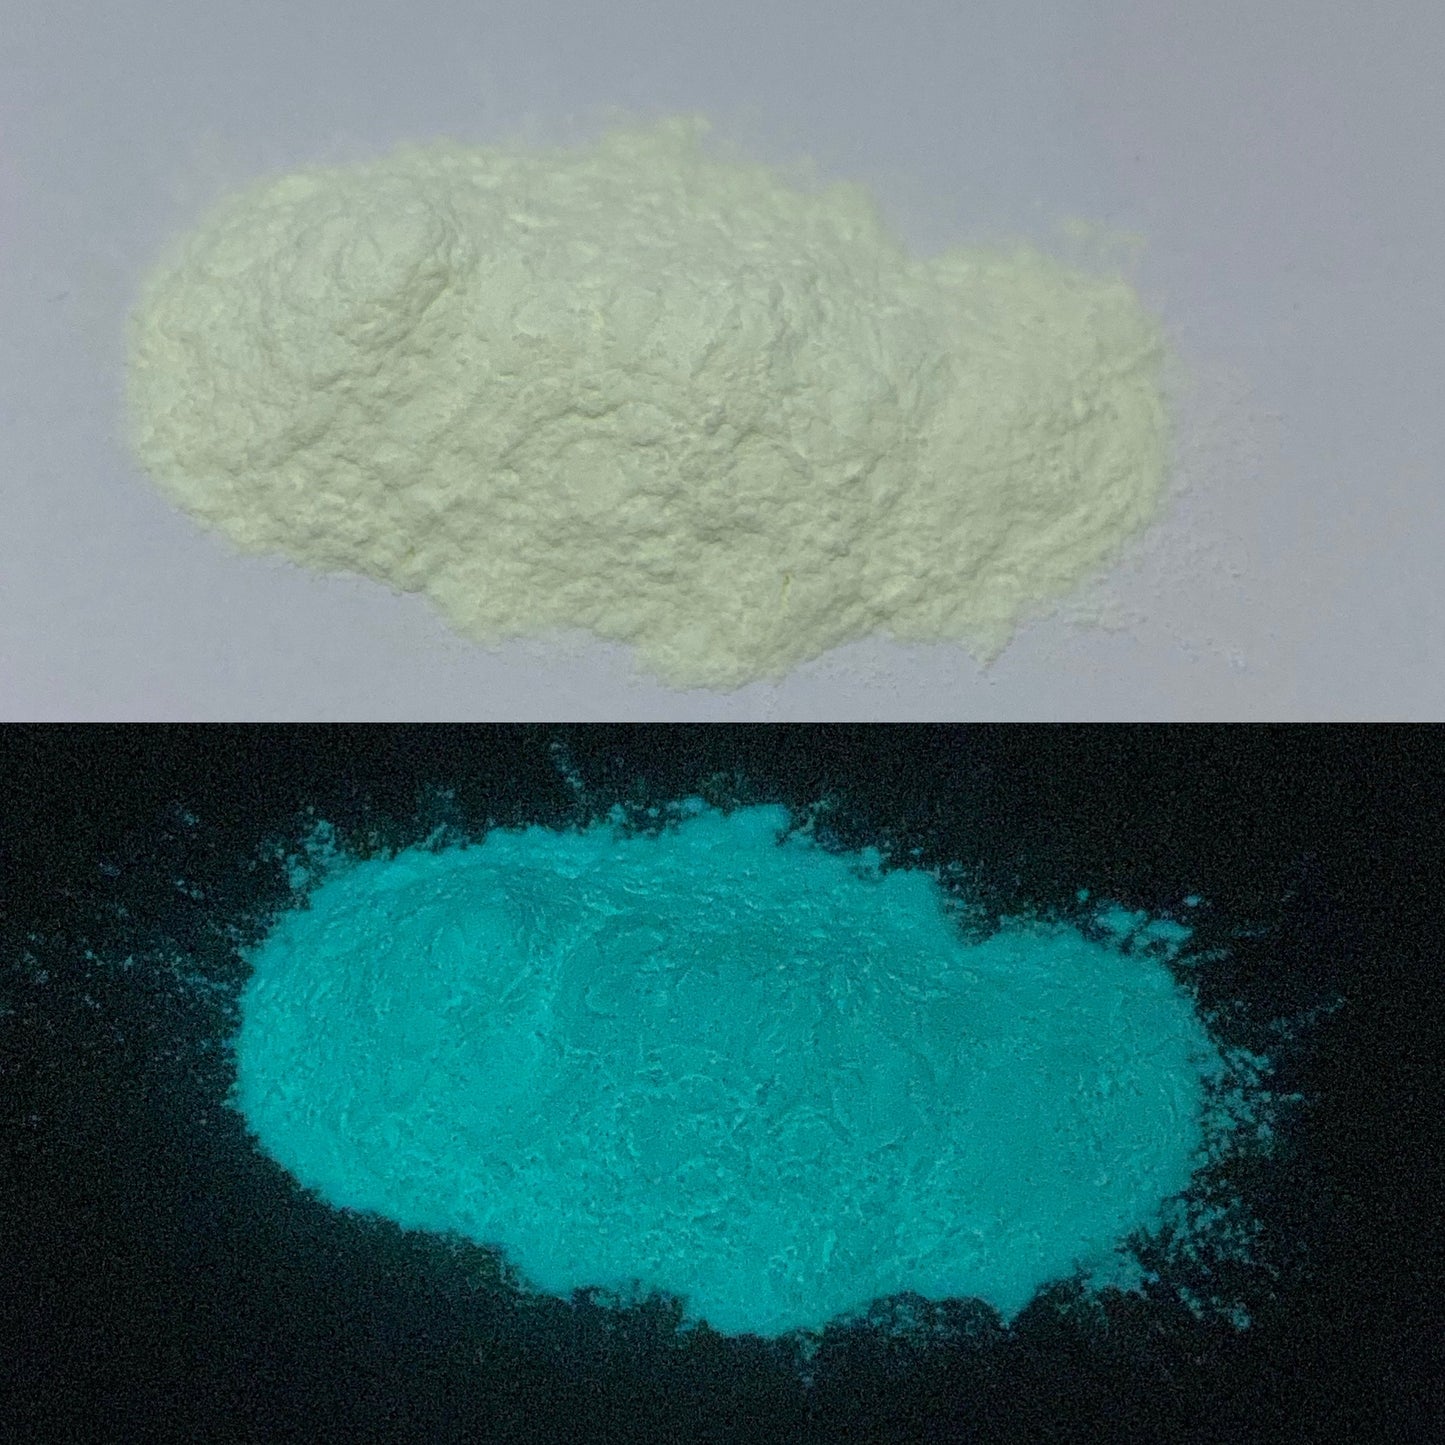 White to Aqua Glow Powder